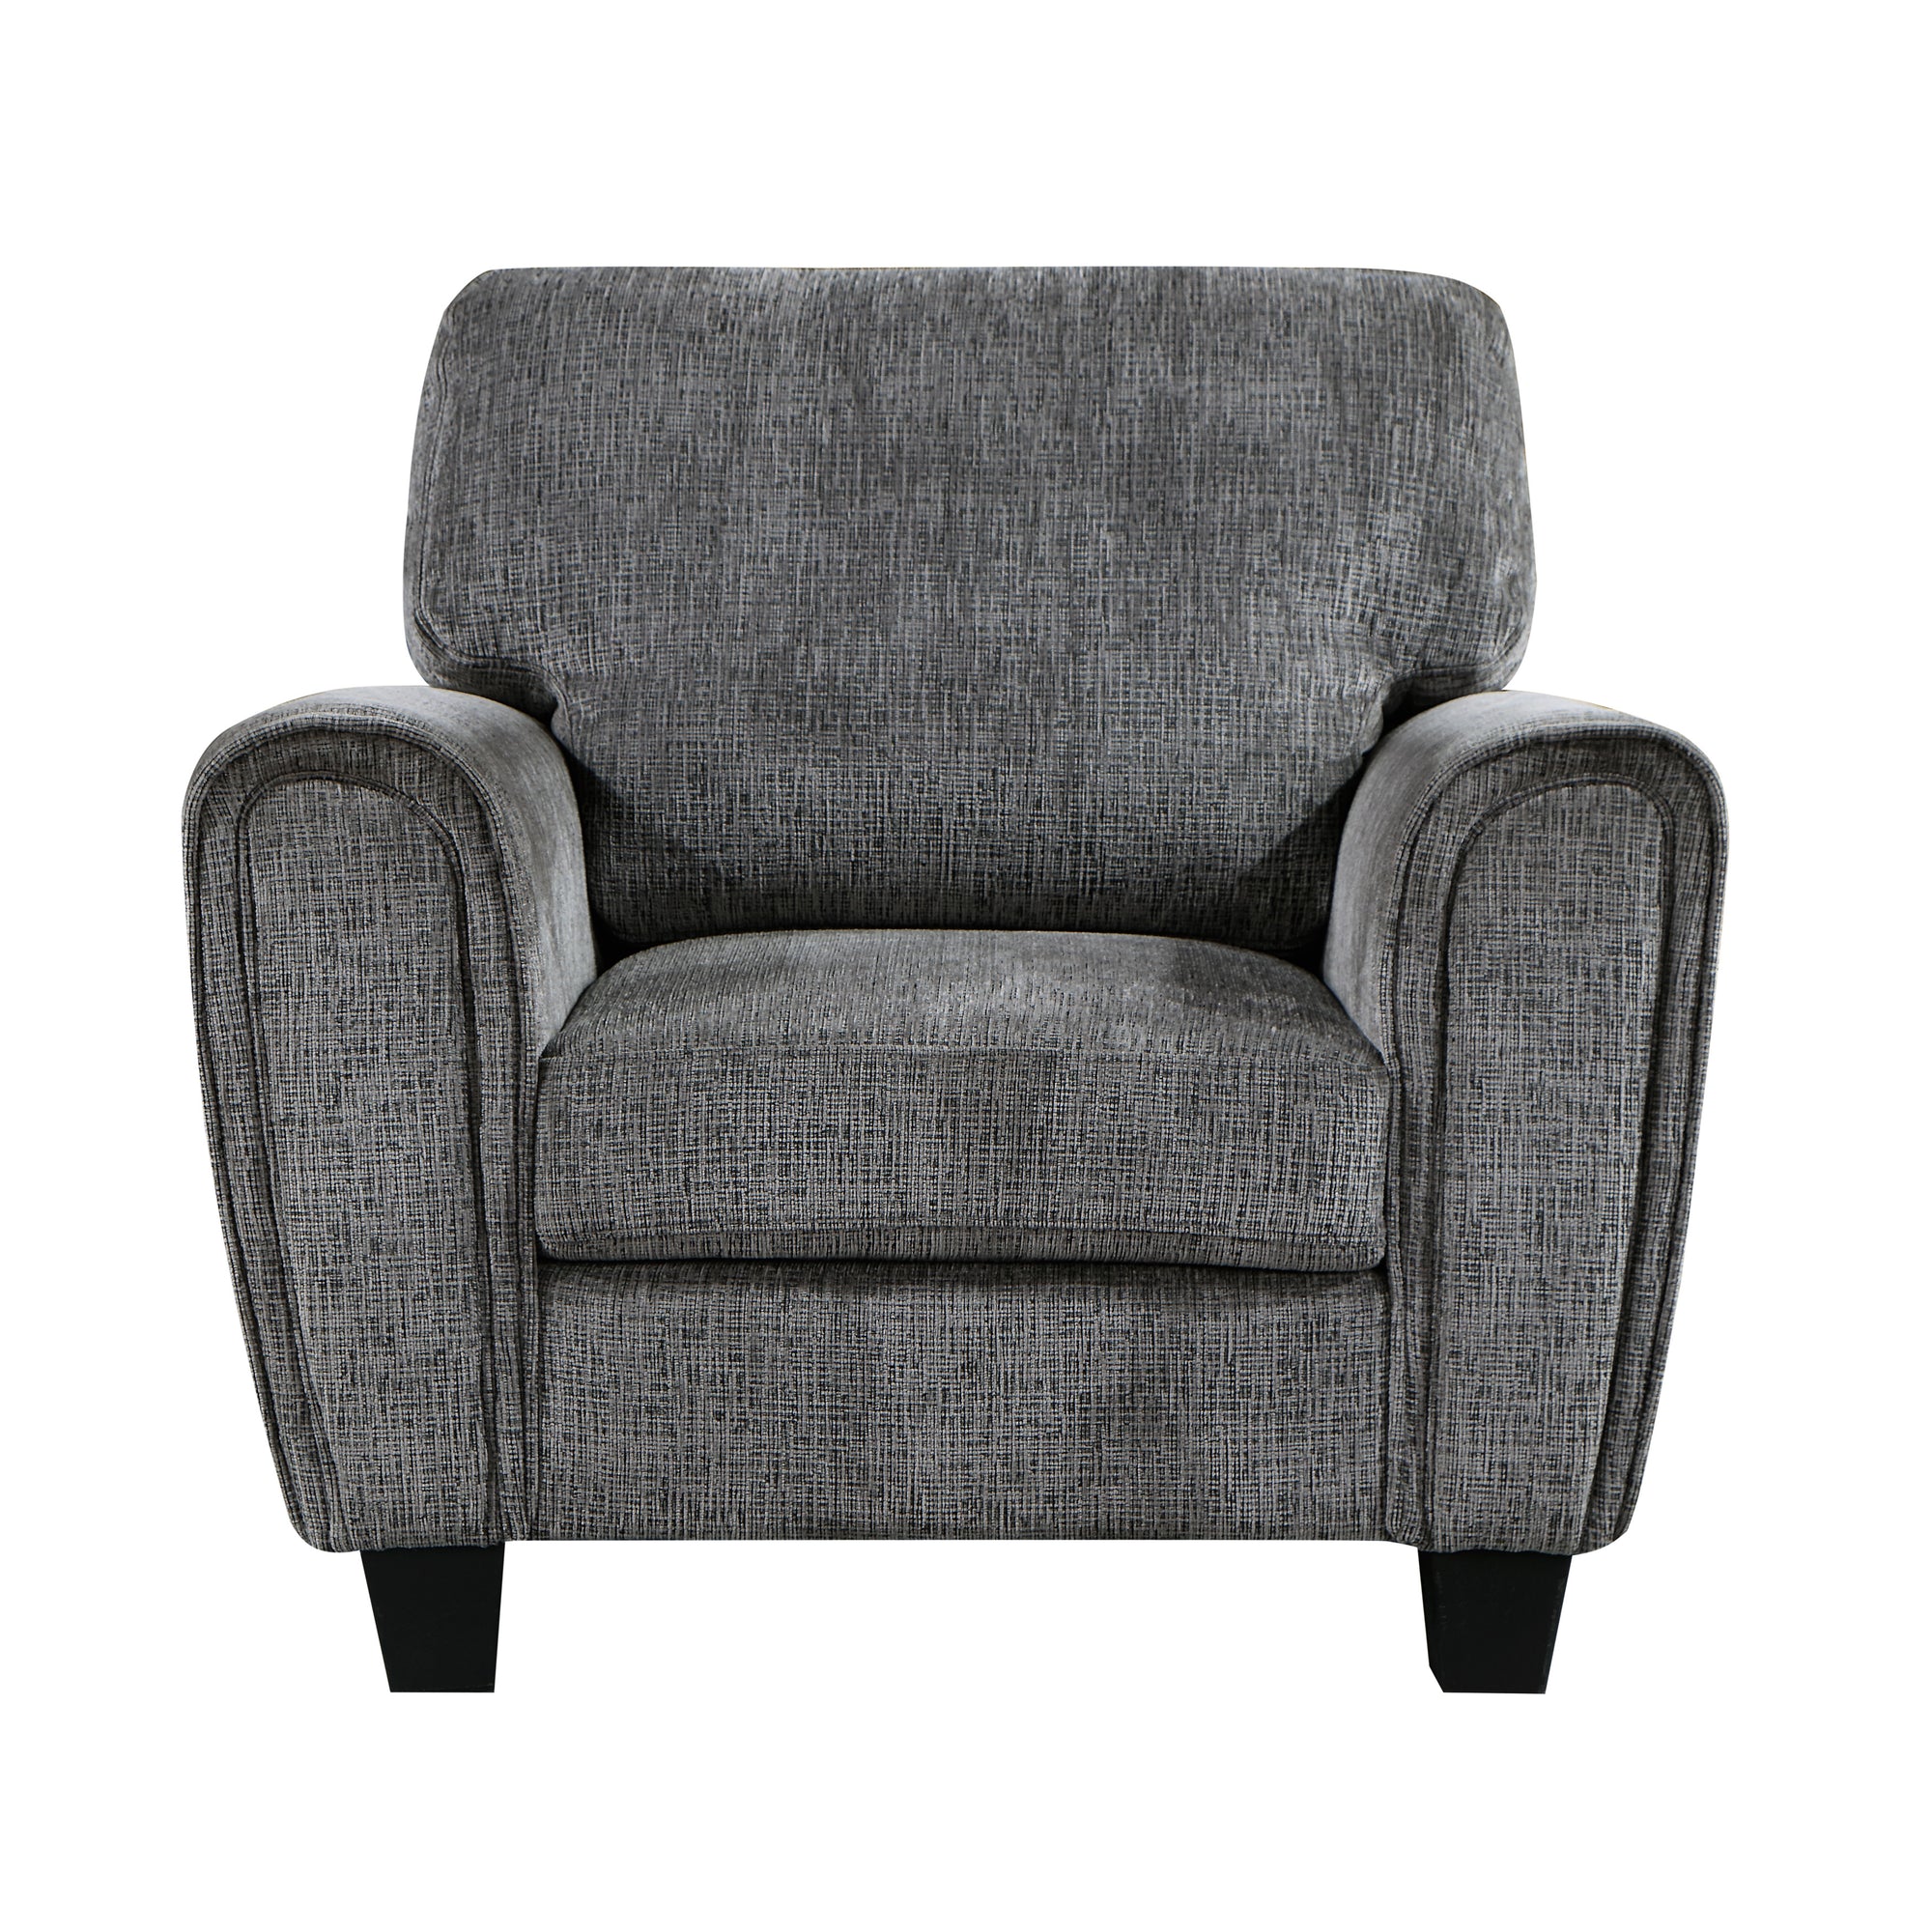 Ravenna Chenille Upholstered Living Room Chair